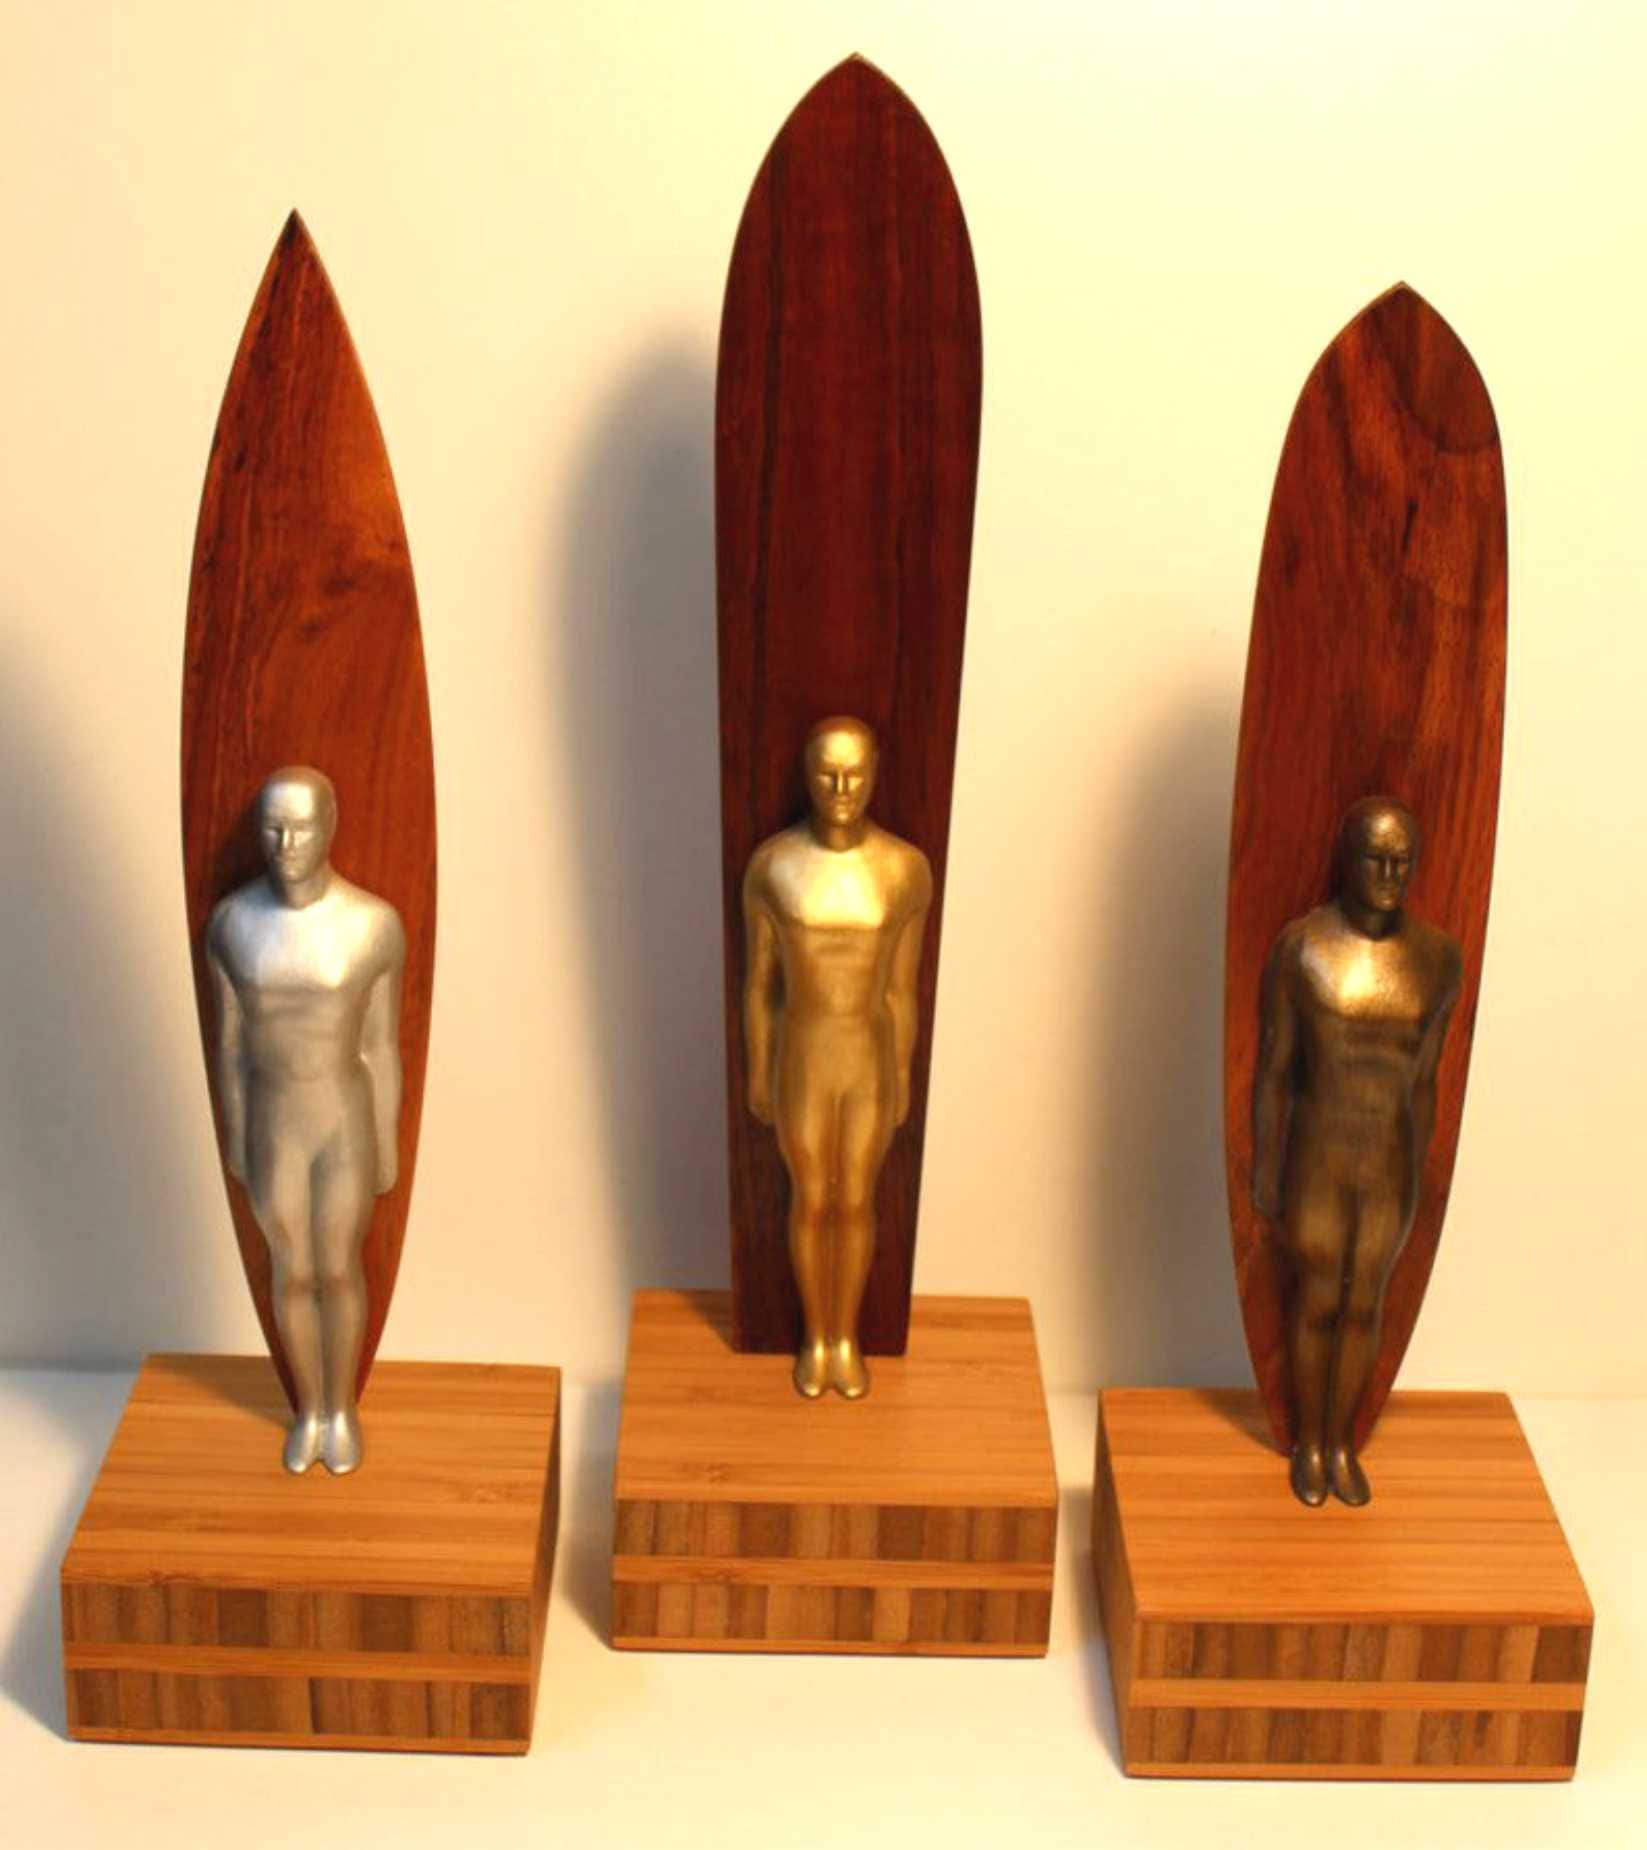 Hawaii Koa Wood Surfrider Trophy Award Vintage Shape Surfboard Bamboo Base 